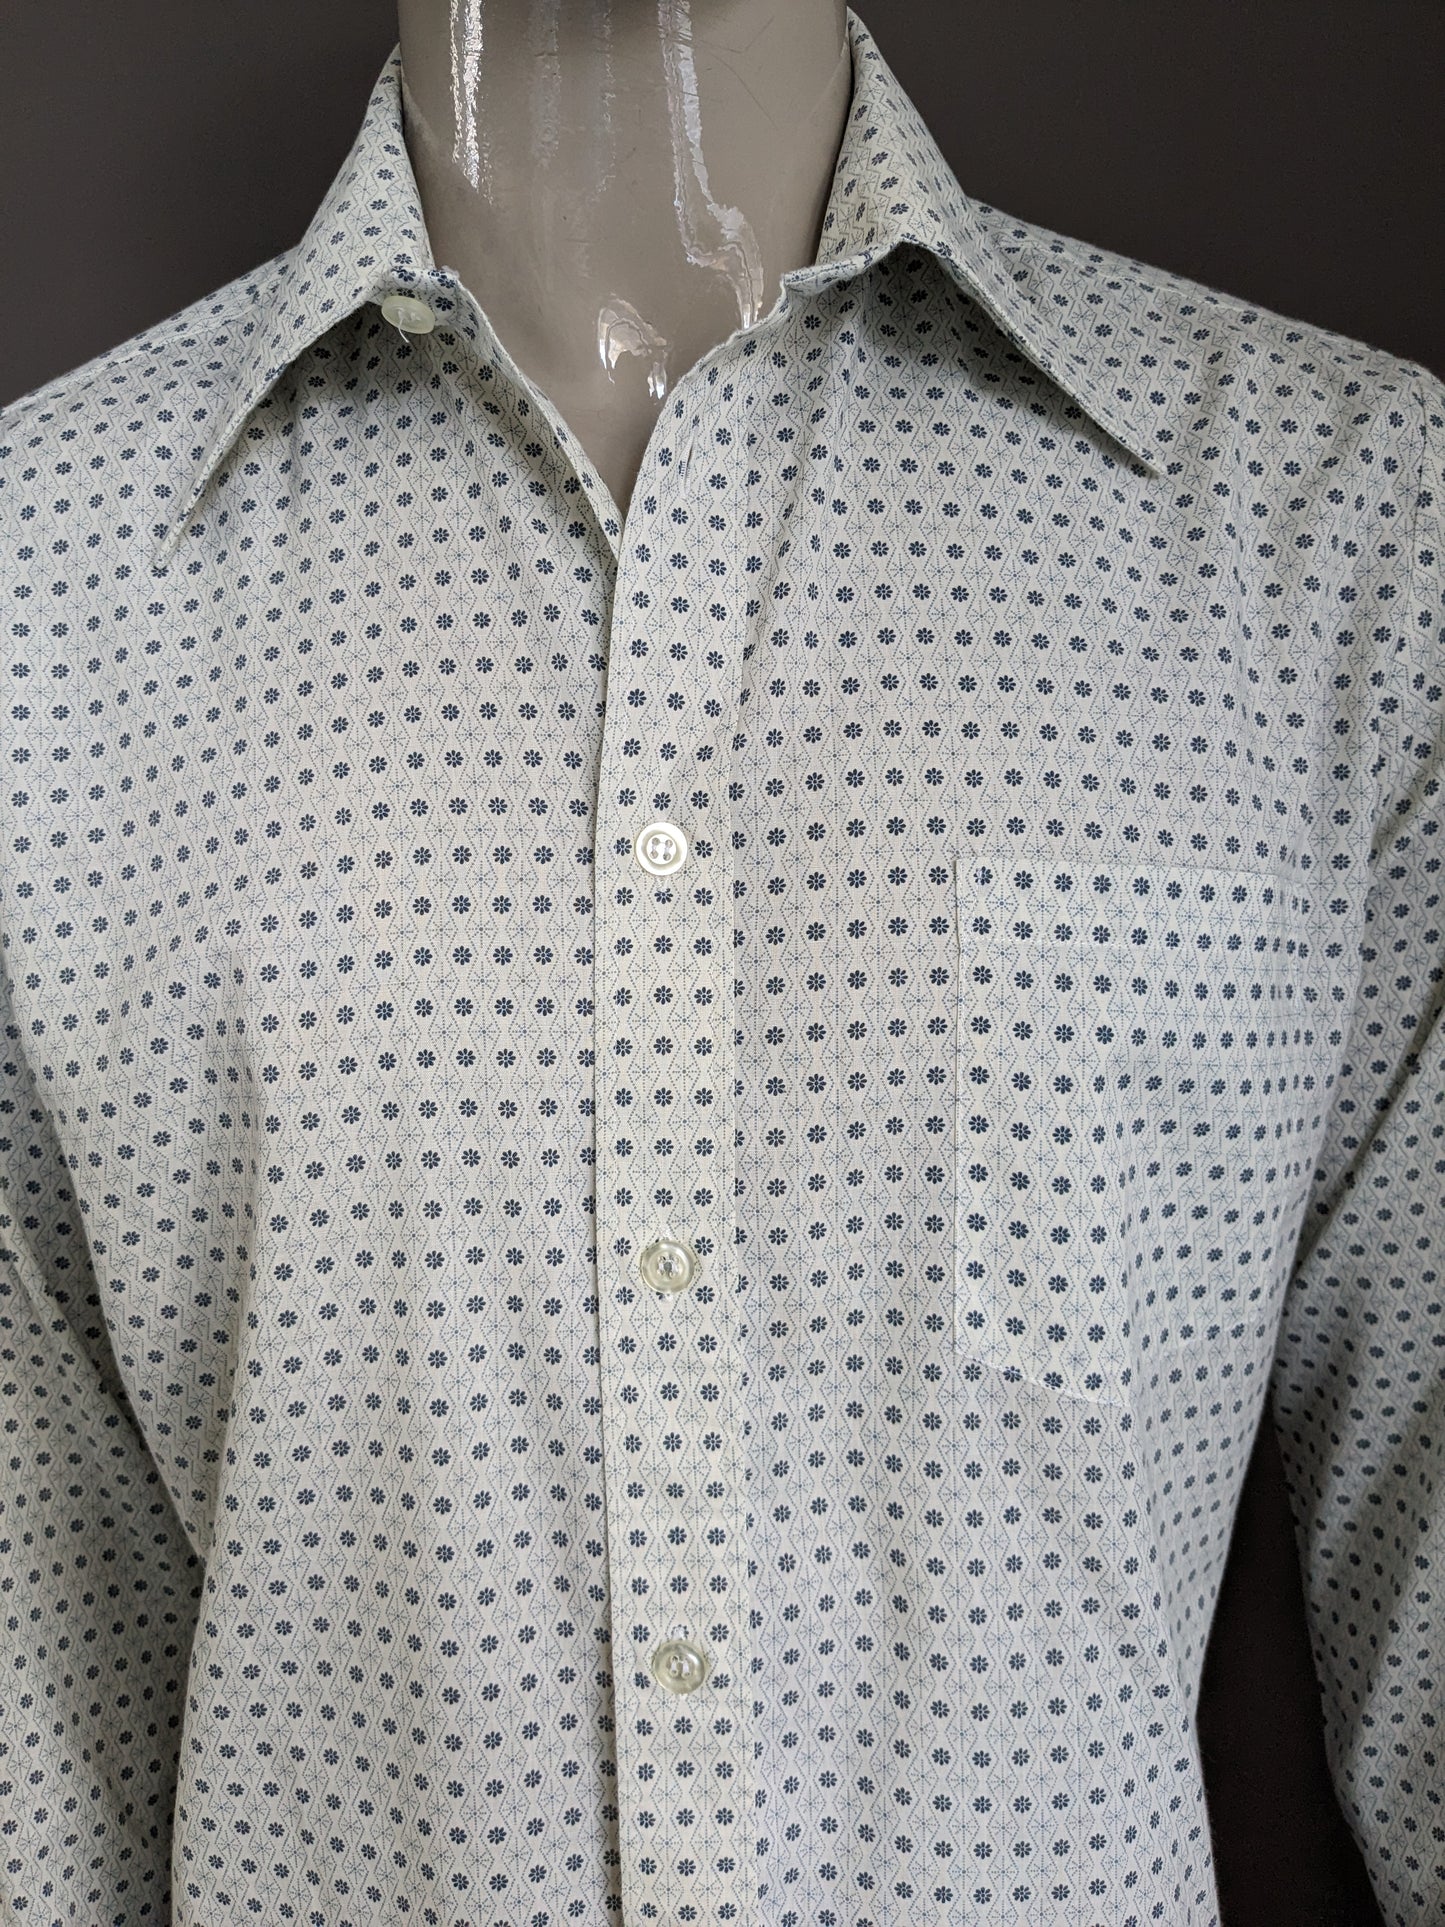 Shirt de Fabio 70 vintage avec collier. Floral gris beige. Taille xl.